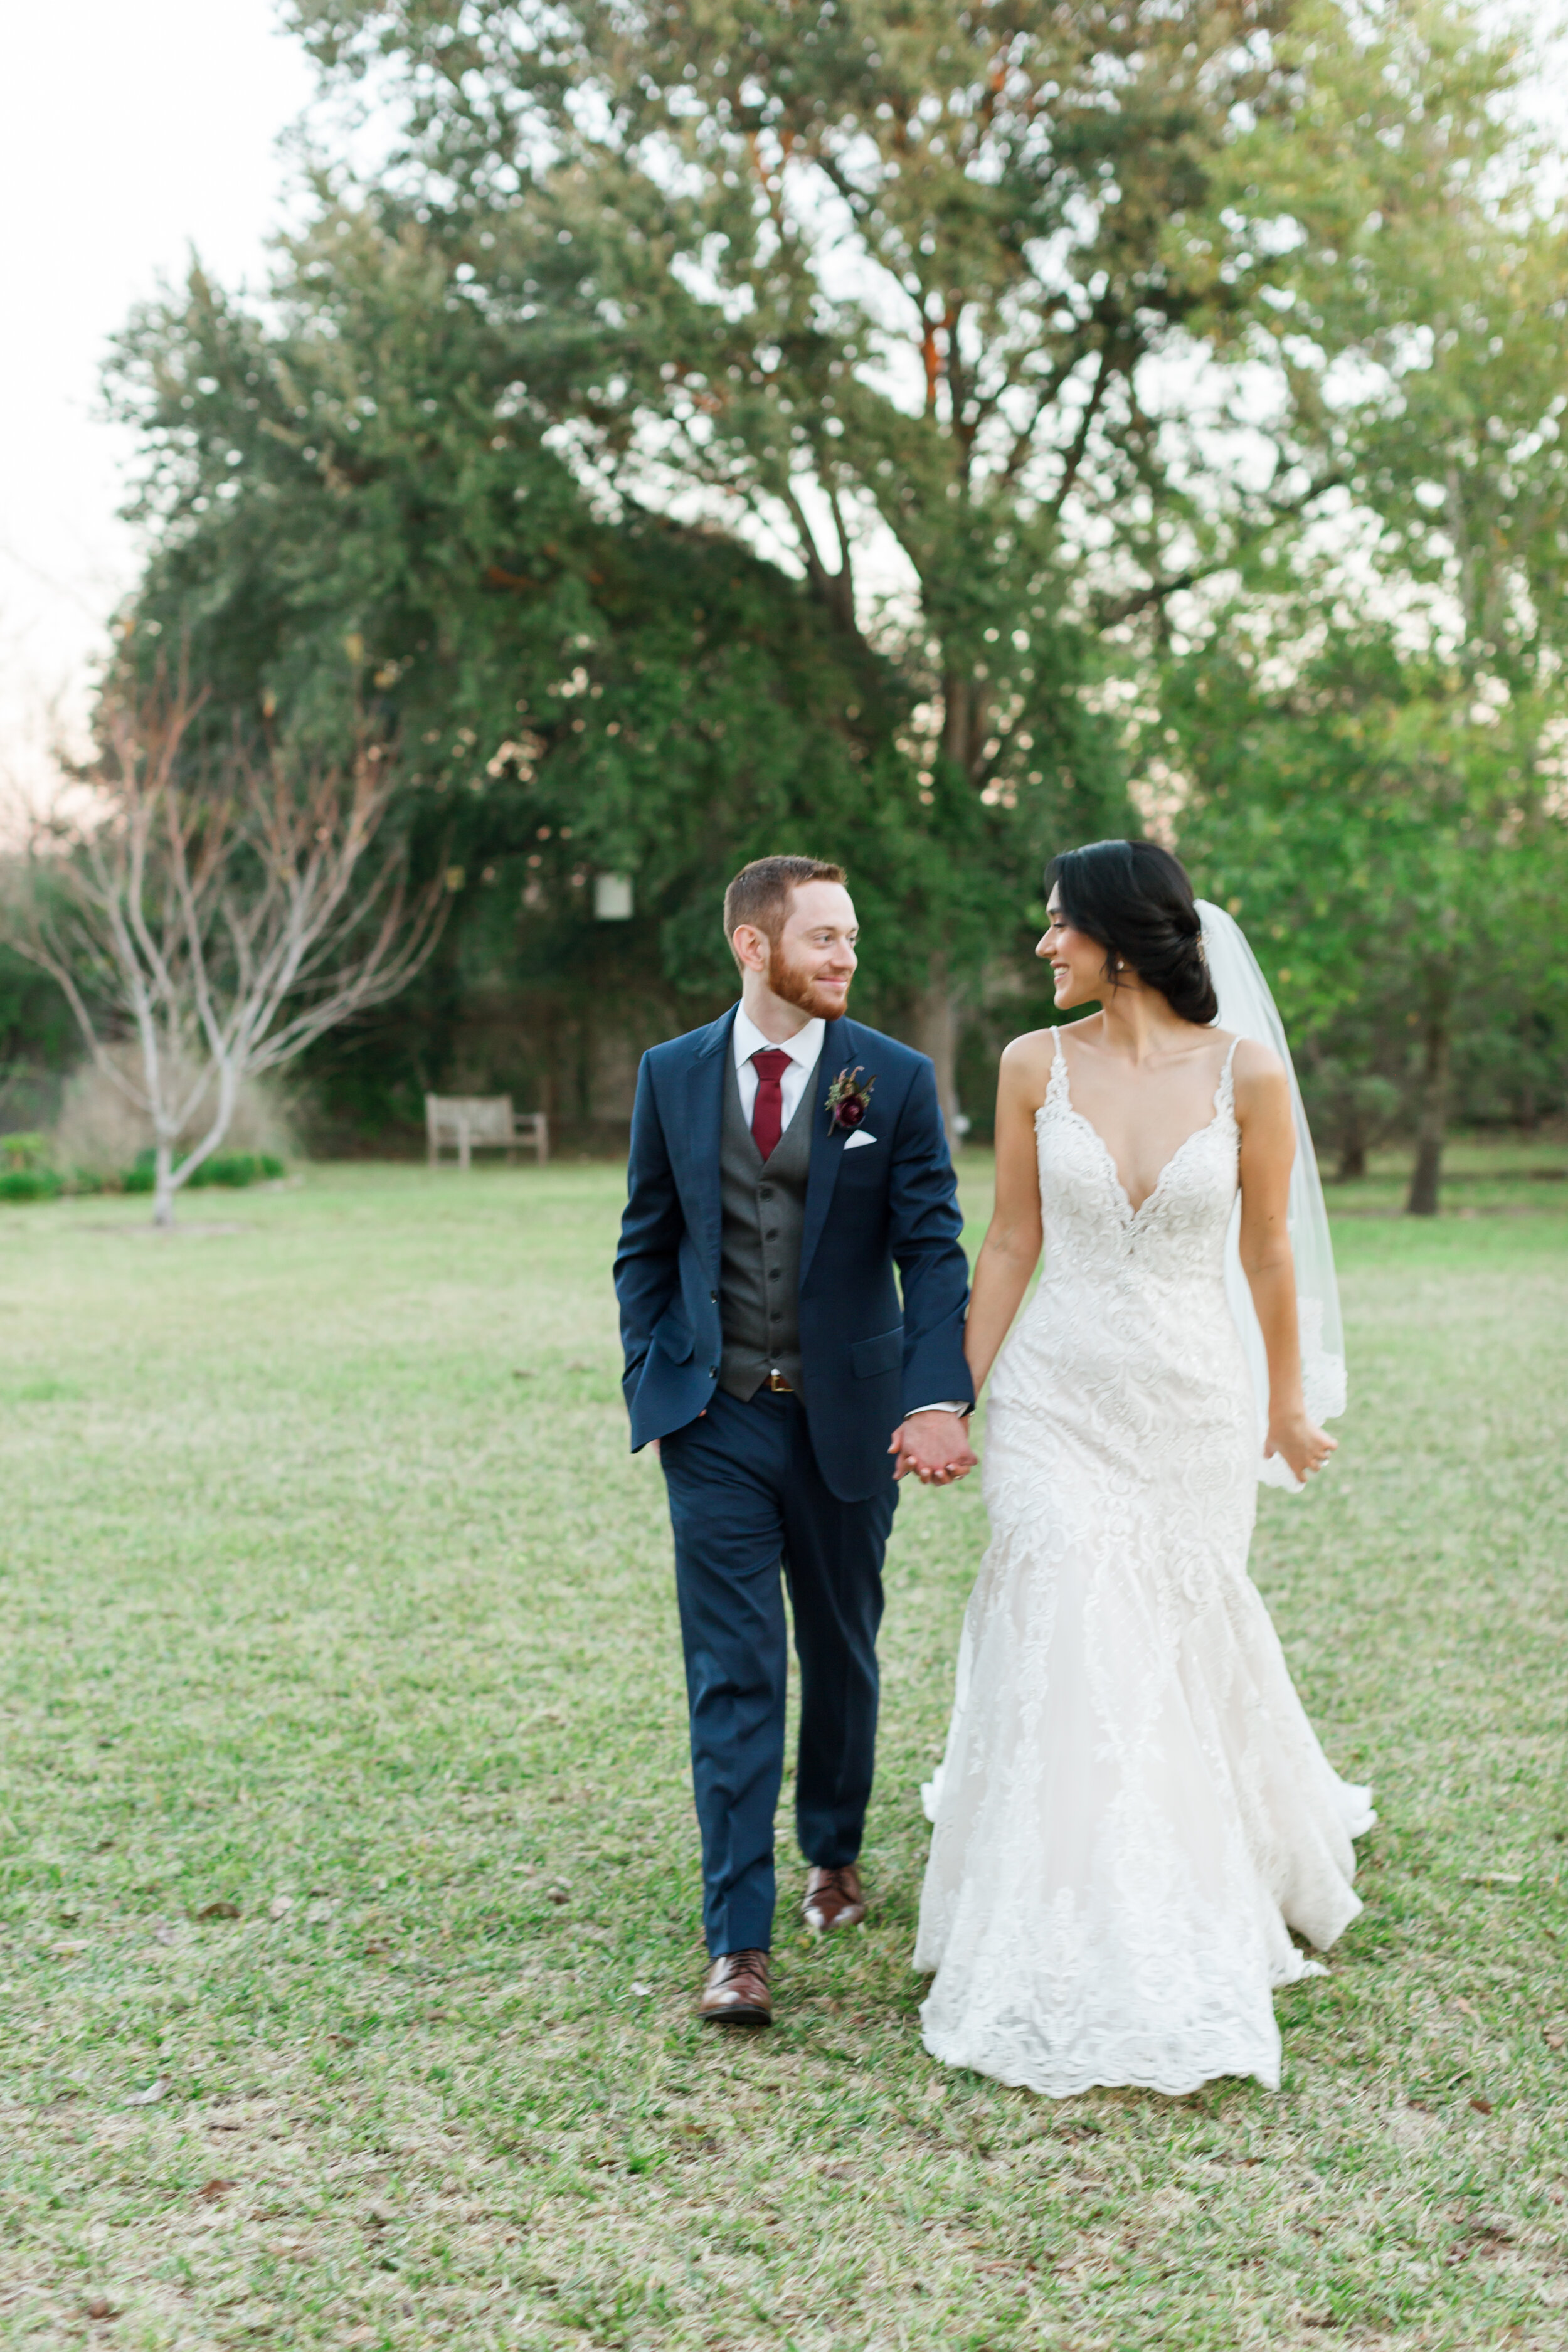 WEDDING - GALLERY - NATHAN & PAULINA - BRIDE & GROOM-165.jpg